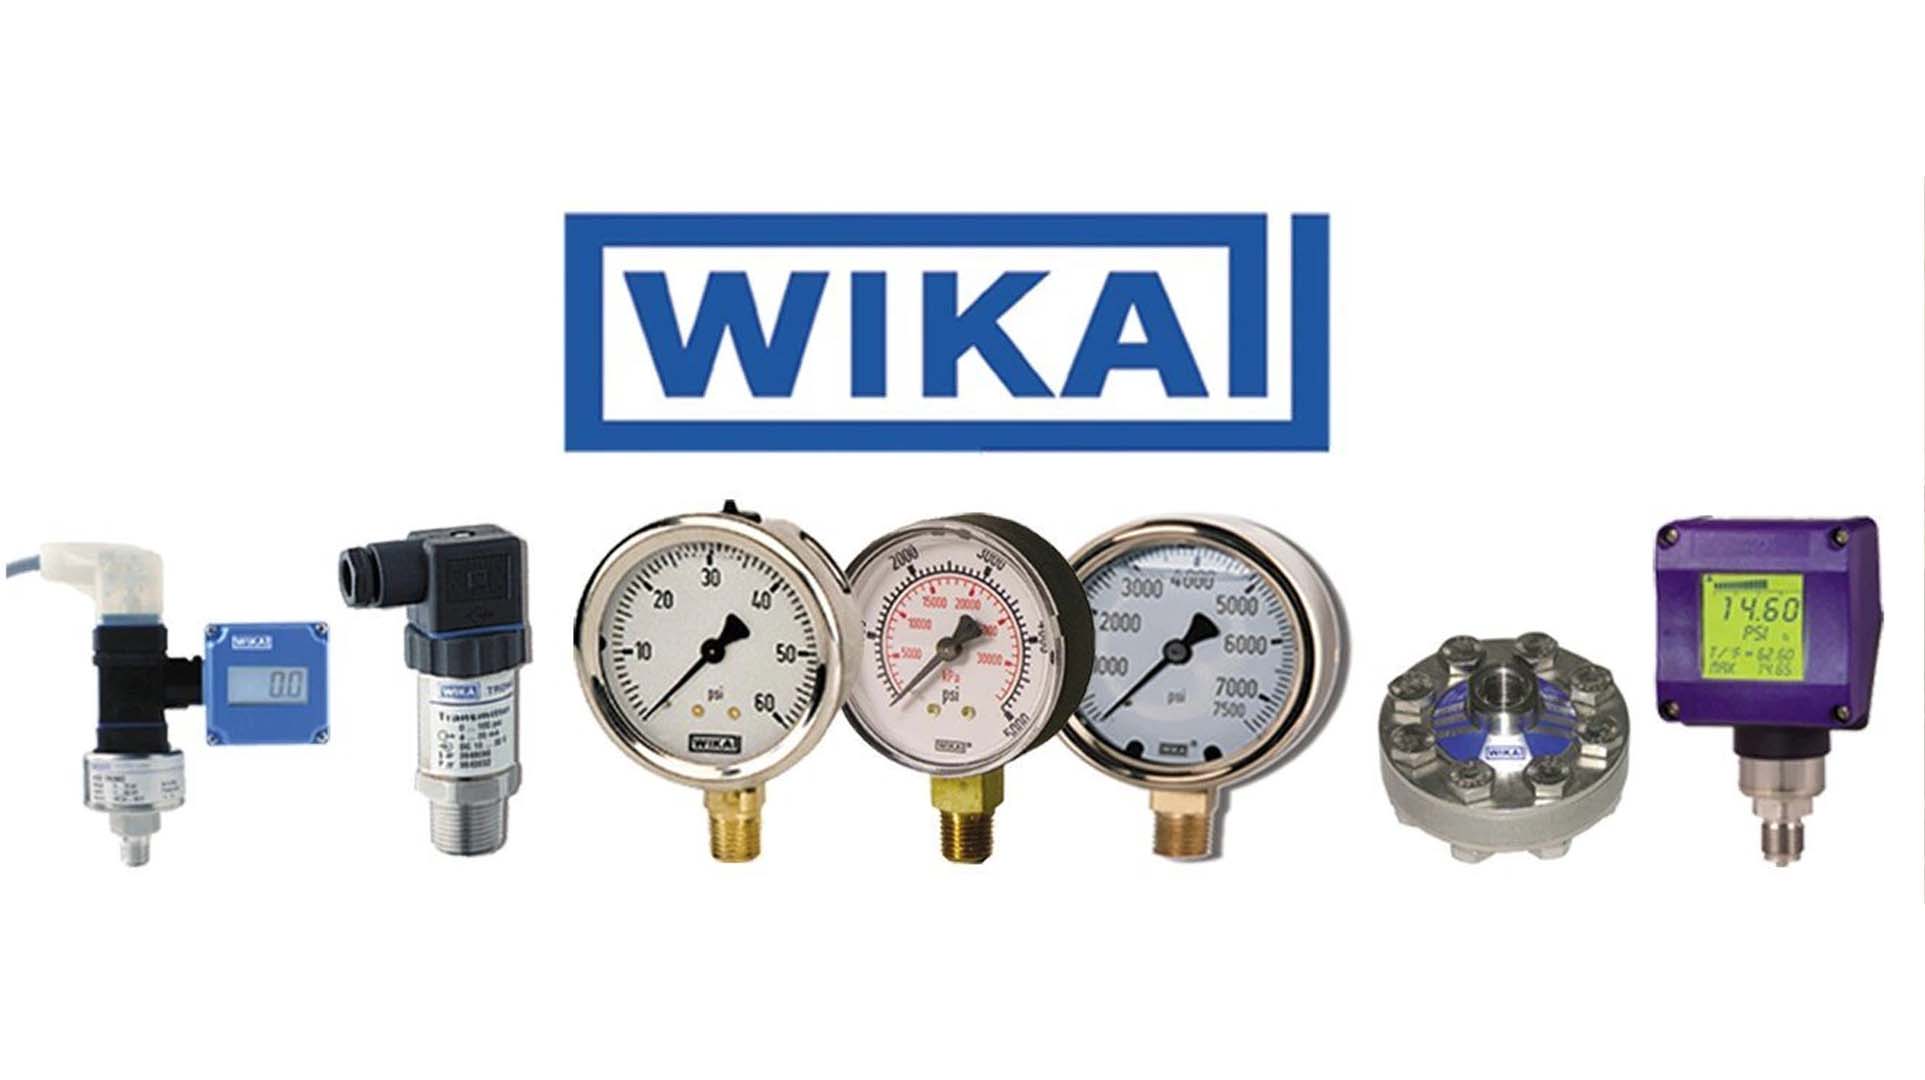 گیج فشار ویکا (WIKA) 0-10 بار صفحه 10 سانتی متر (ORIGINAL)